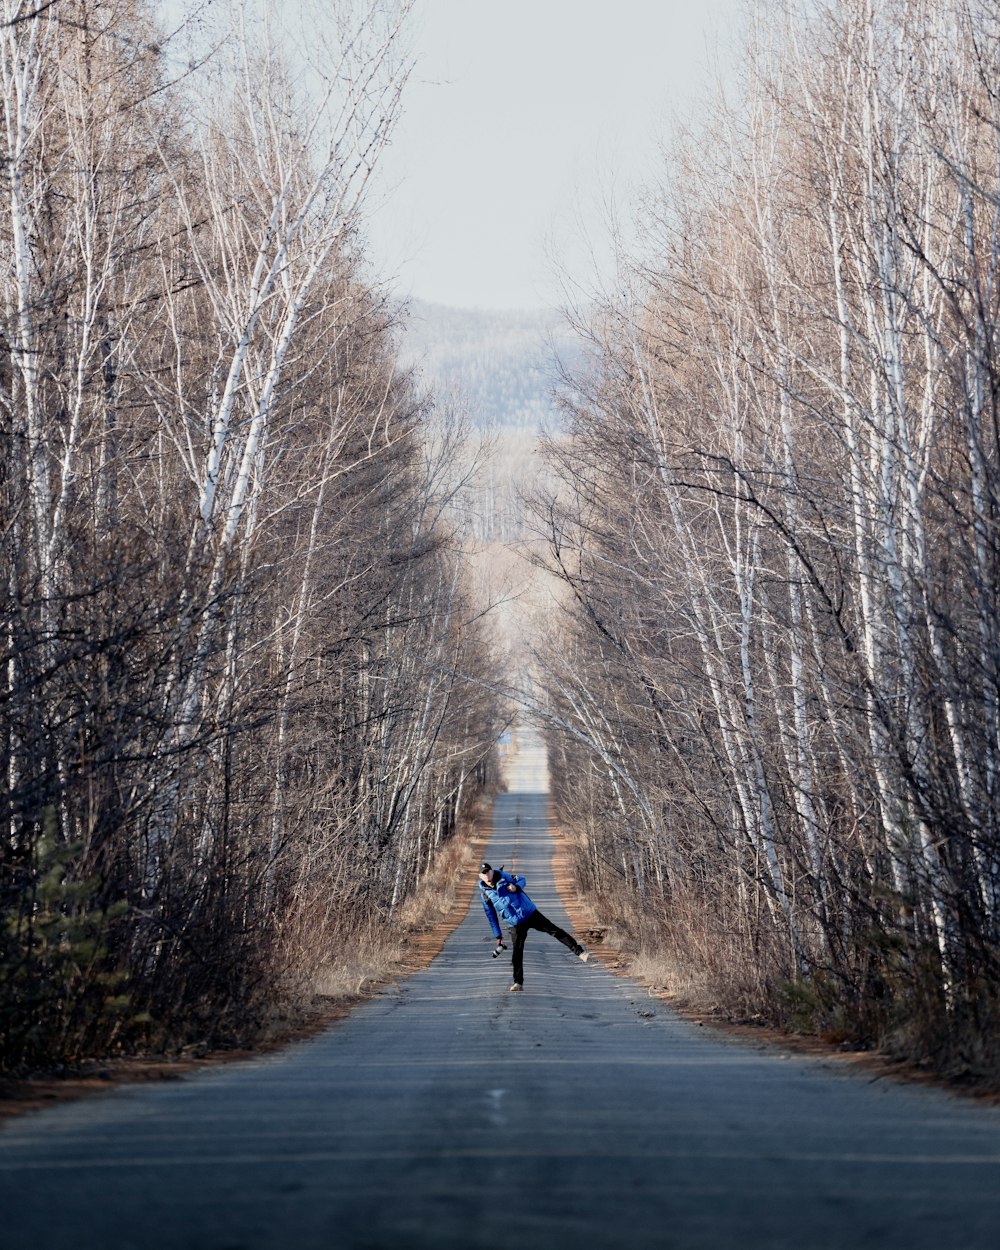 Una persona parada en medio de una carretera rodeada de árboles